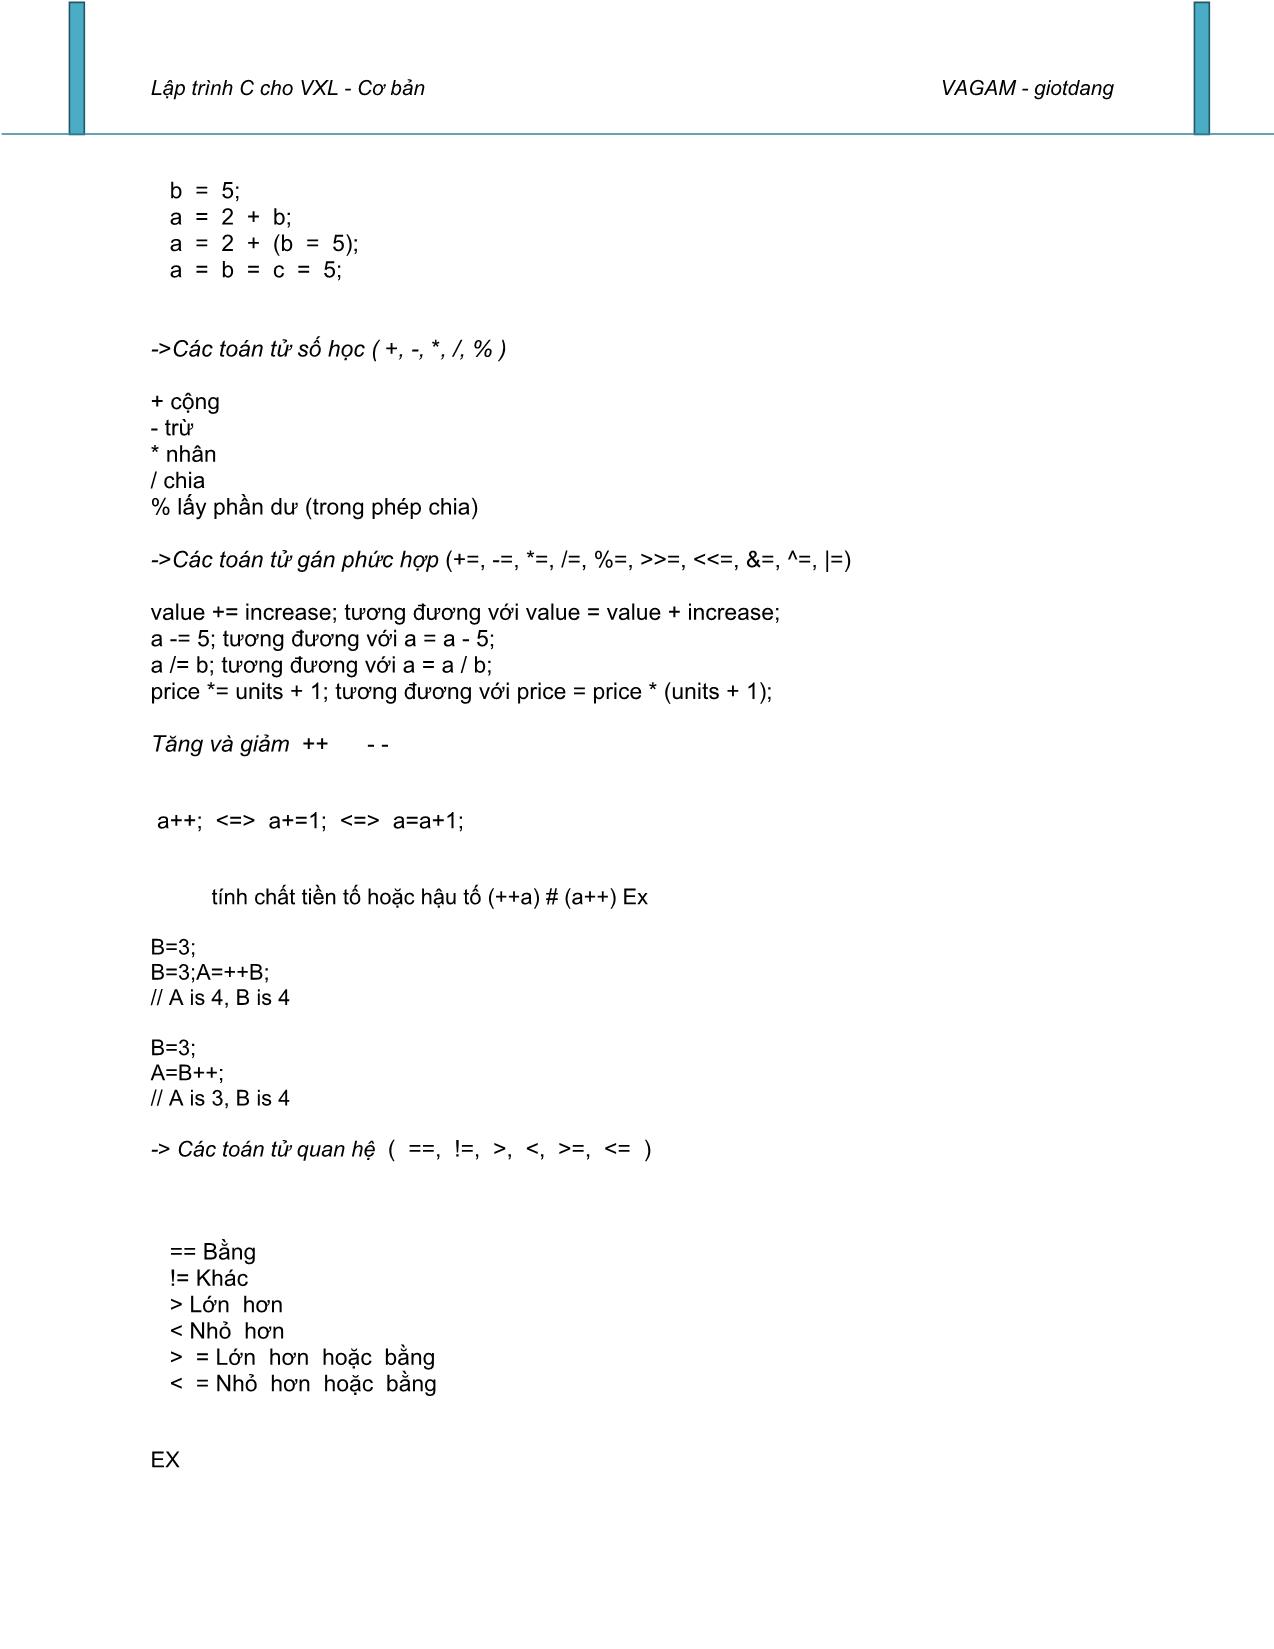 Lập trình C cho Vi xử lý cơ bản trang 4